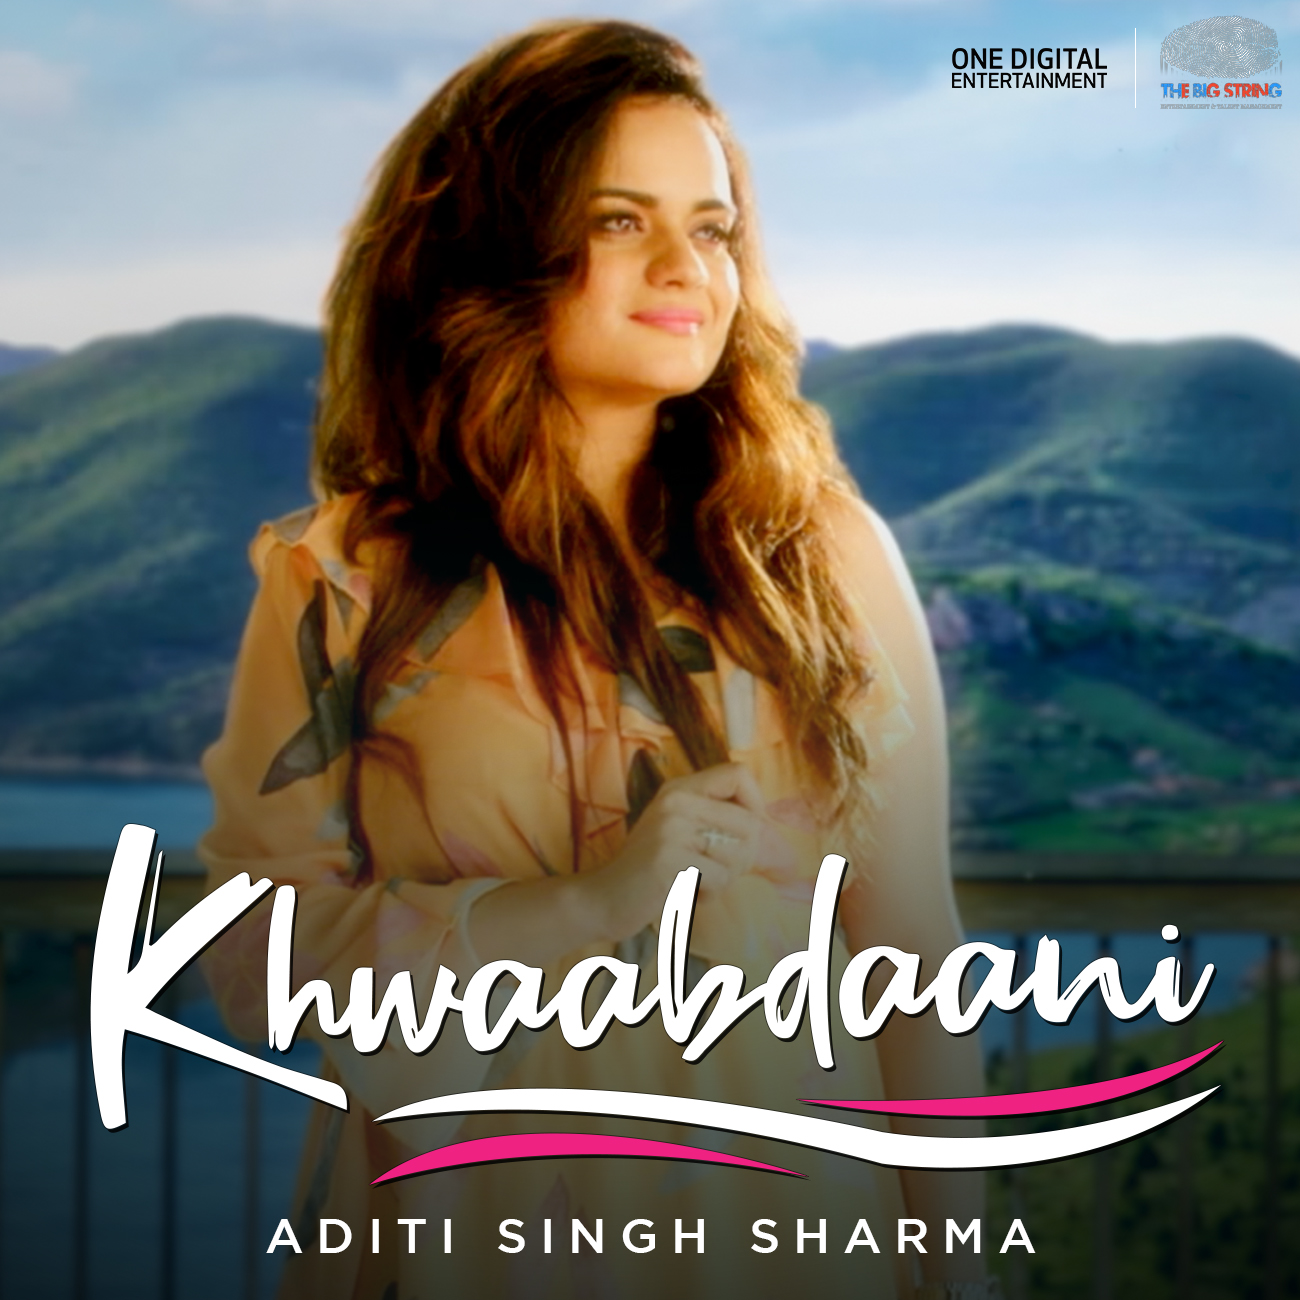 Khwaabdaani Video Song, Khwaabdaani Full Video Song in HD Quality on